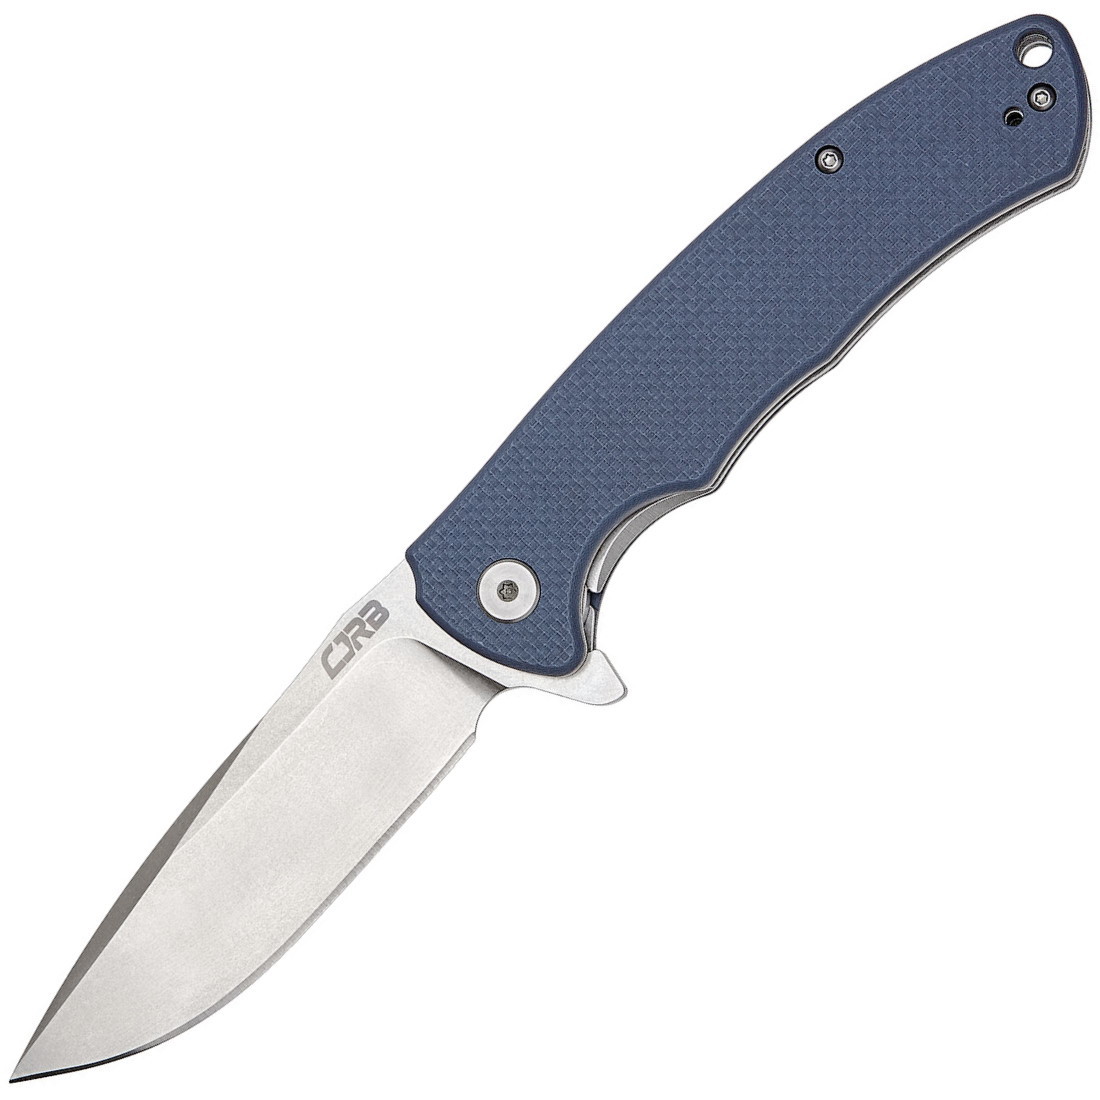 Складной нож CJRB Taiga, сталь D2, рукоять G10, Blue, Бренды, CJRB Cutlery